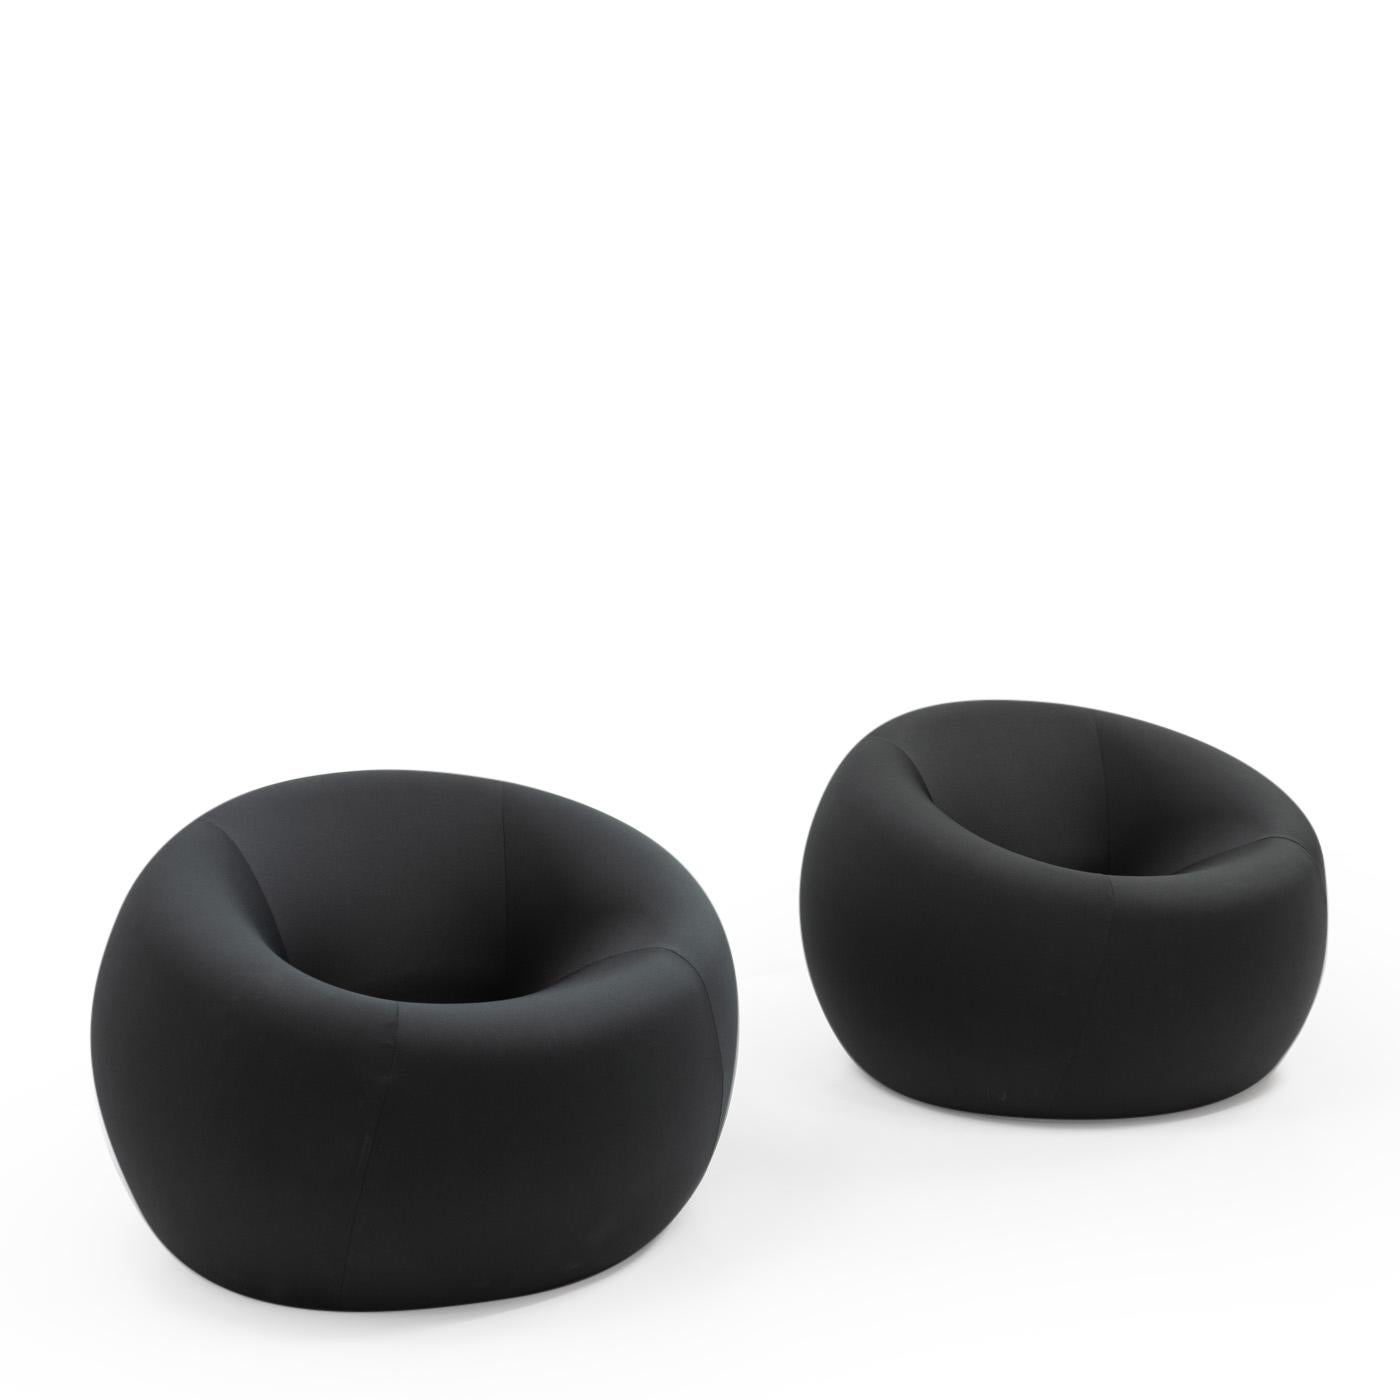 UP1 Lounge Chairs, entworfen  im Jahr 1969 von Gaetano Pesce für C&B Italia (heute B&B Italia):

Diese Loungesessel sind für ihre unverwechselbare, runde Form bekannt, und dank ihrer Struktur, die vollständig aus Polyurethanschaum besteht, sind sie